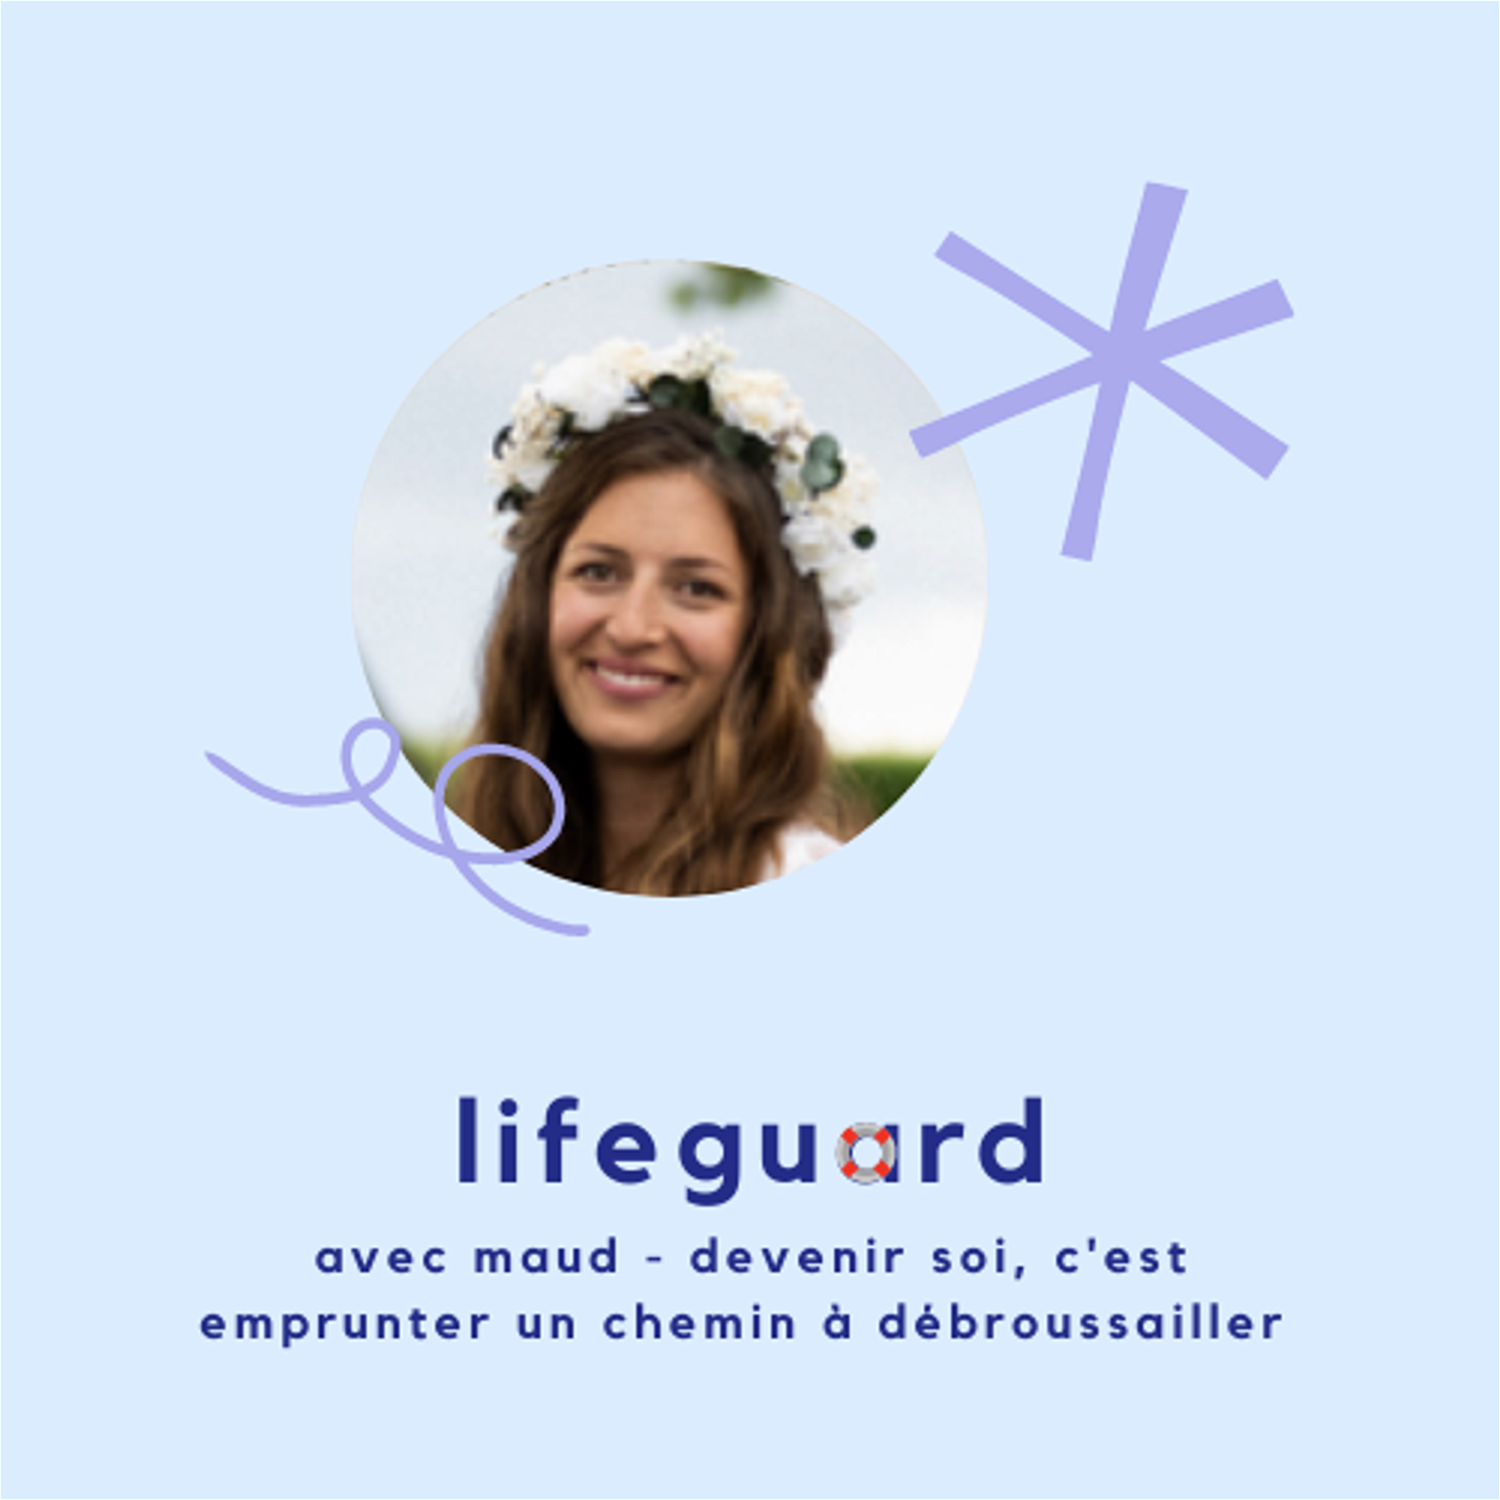 Cover podcast Plouf lifeguard avec Maud - devenir soi, c'est choisir d'emprunter un chemin à débrouissailler - sujet orientation - féminisme - burnout.png